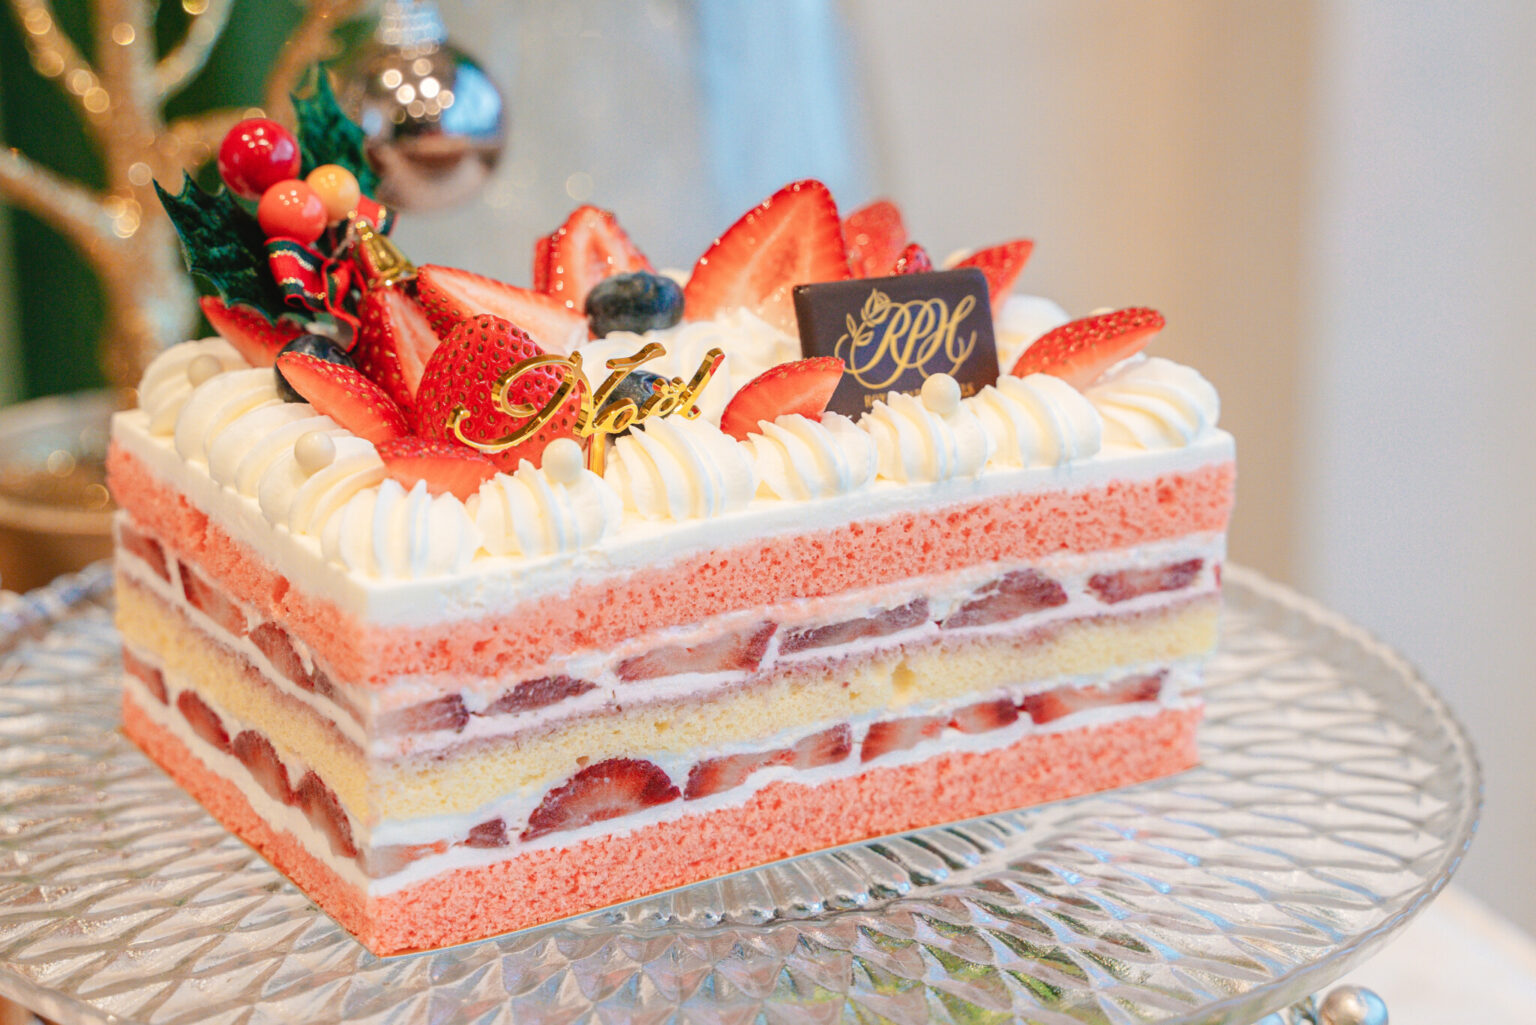 「クリスマスショートケーキ」Lサイズ4,860円、Sサイズ3,240円。
ピンクと白が何層にも。ラズベリーシロップを入れて焼き上げたしっとりきめ細やかなスポンジで、たっぷりの生クリームといちごをサンドした軽やかな口当たりの良いショートケーキ。断面までこだわった見た目の可愛さが人気の秘密です。